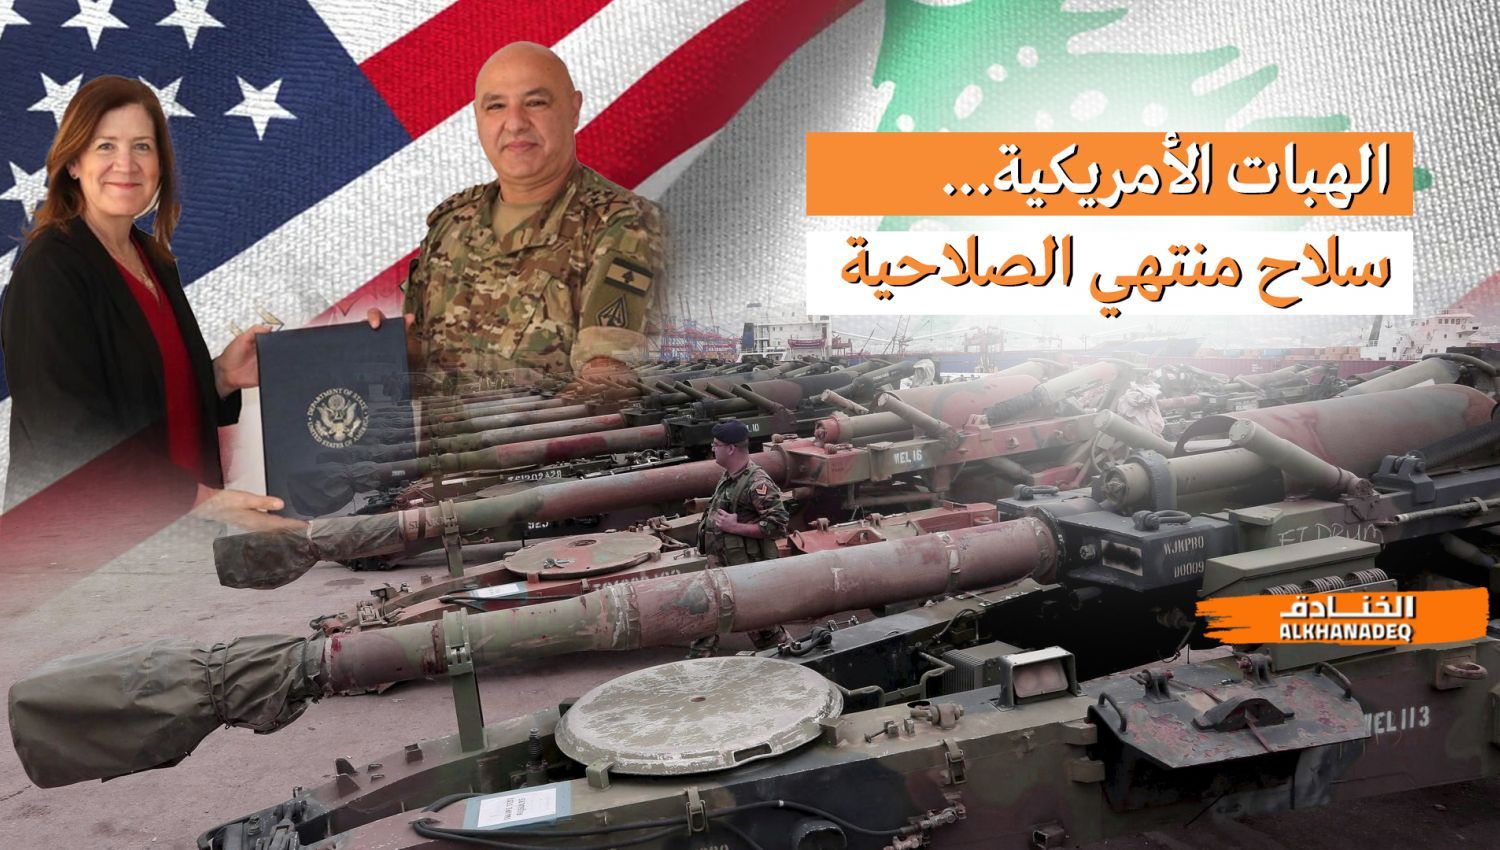 شاهد | واشنطن تبتز الجيش اللبناني بسلاحٍ قديم خارج الخدمة!